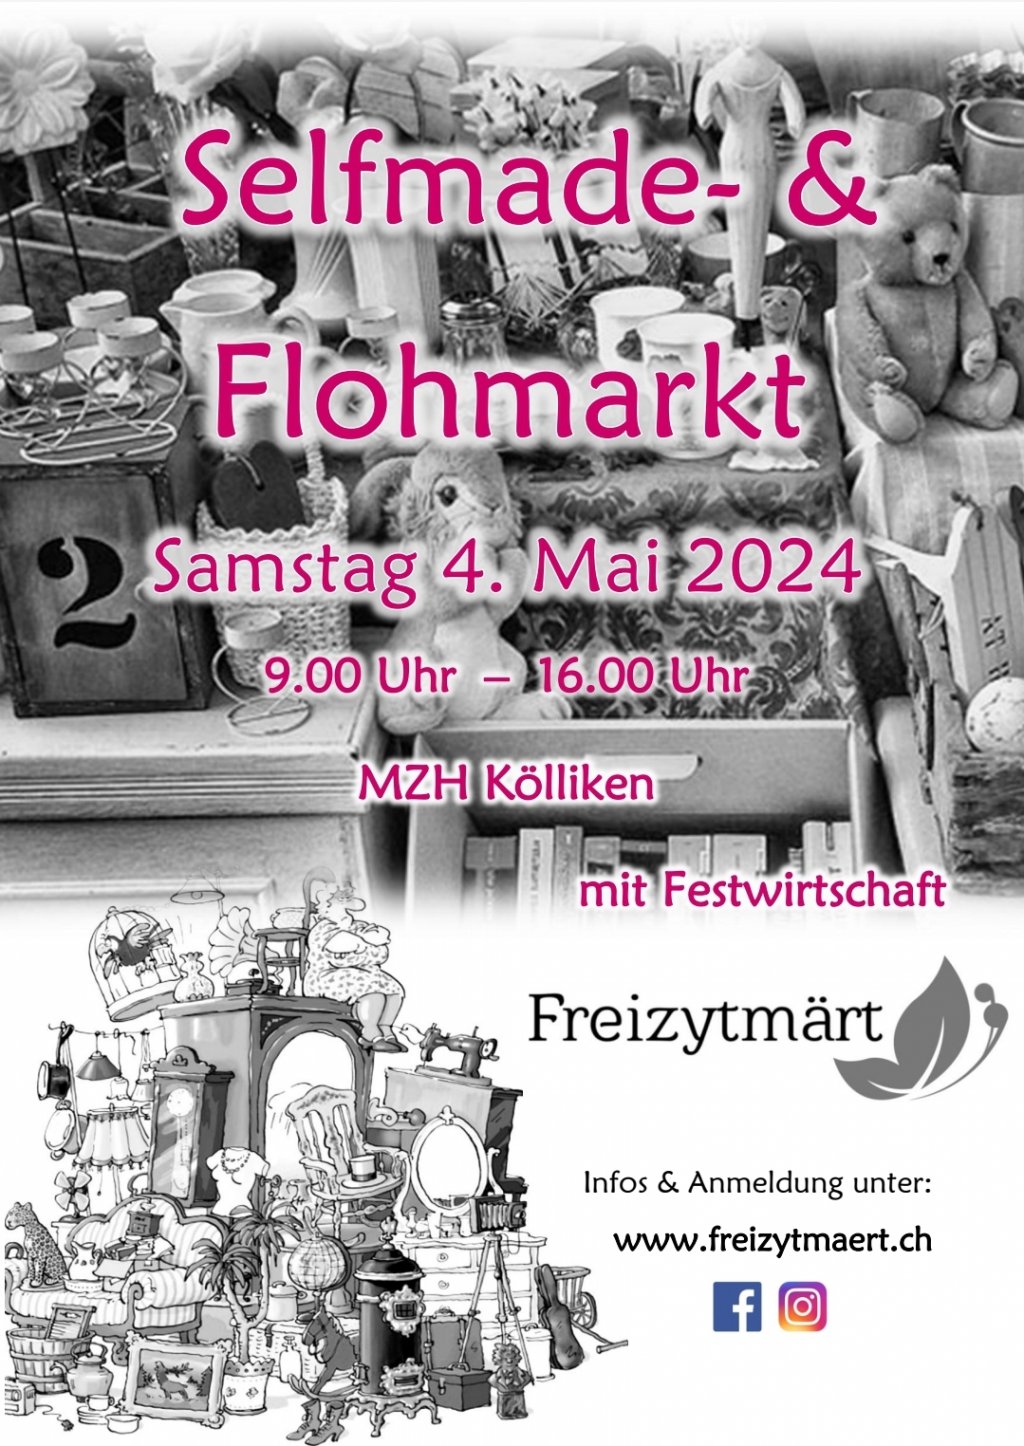 Selfmade- und Flohmarkt in Kölliken / Mai 2024